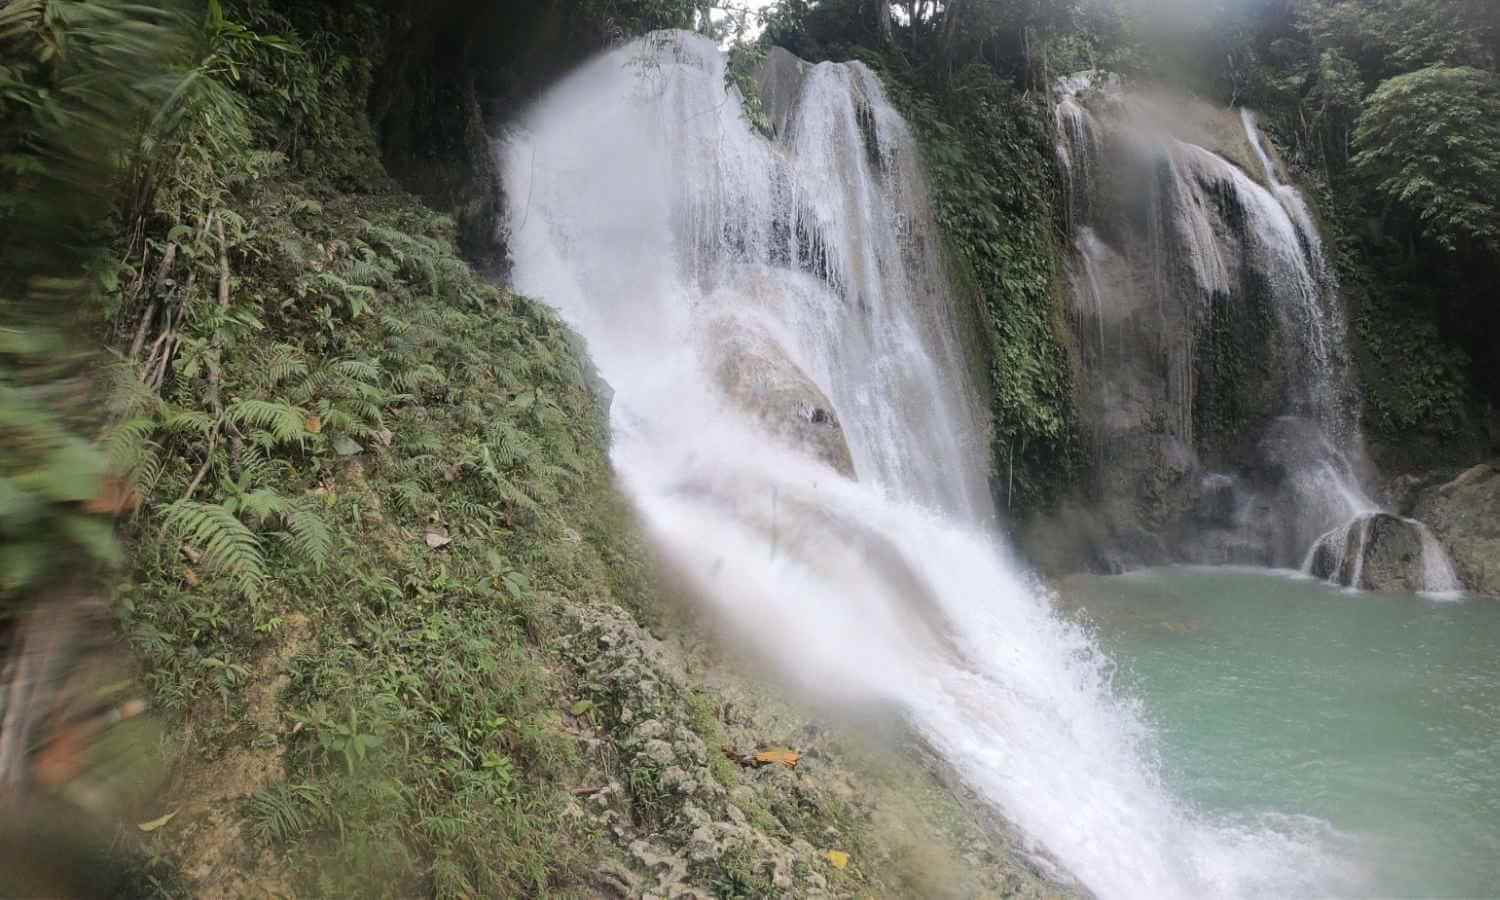 Ingkumhan Falls